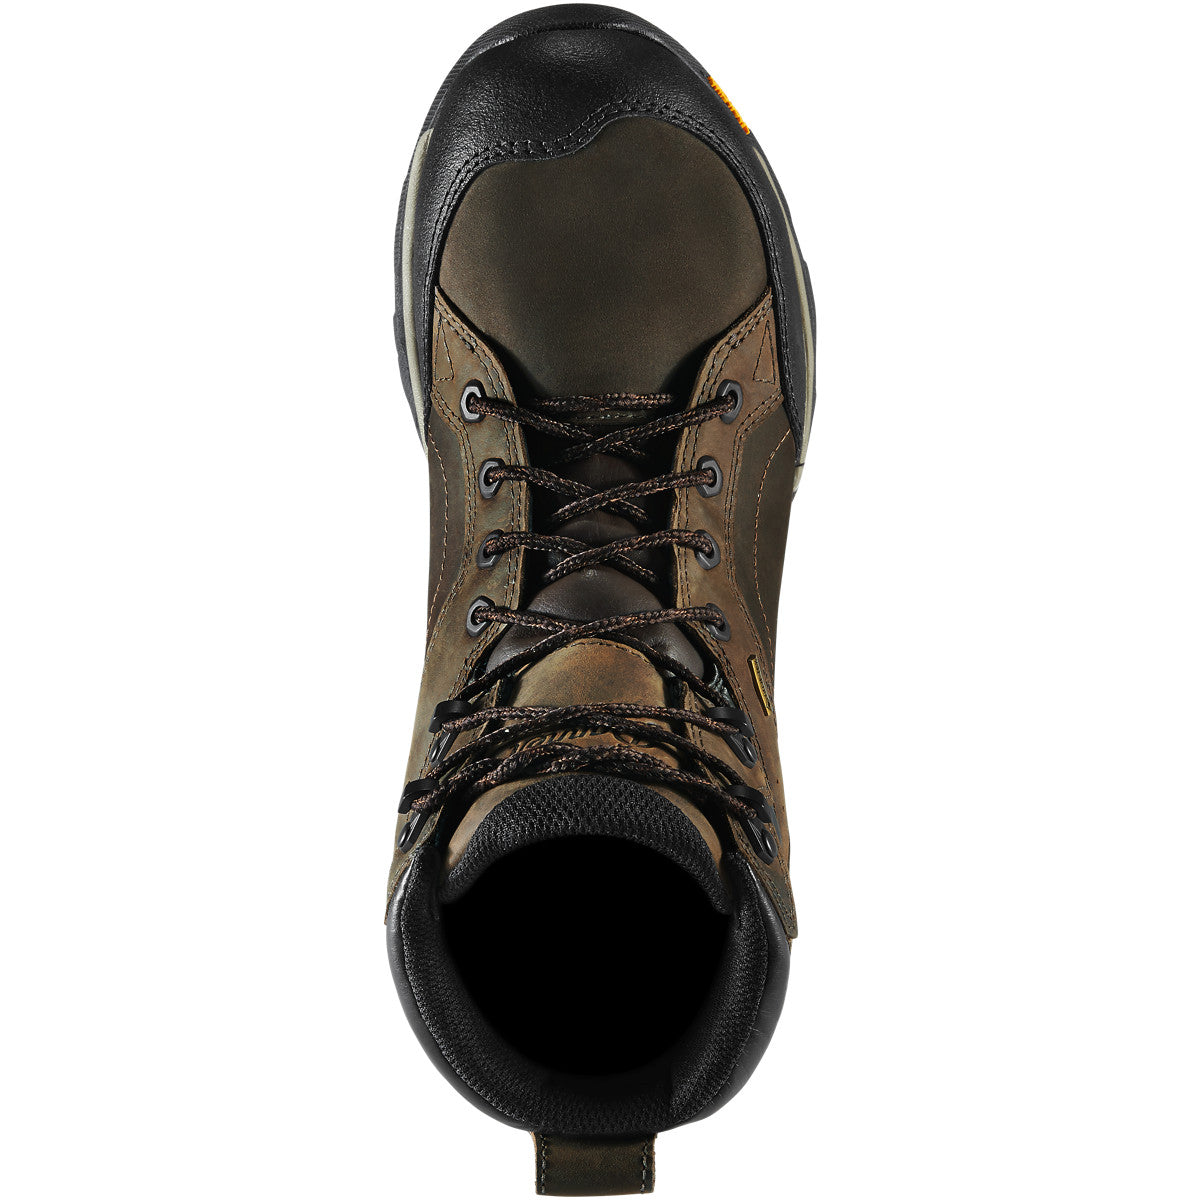 Danner Men's Crucial 6" Composite Toe WP Work Boot - Brown - 15861  - Overlook Boots